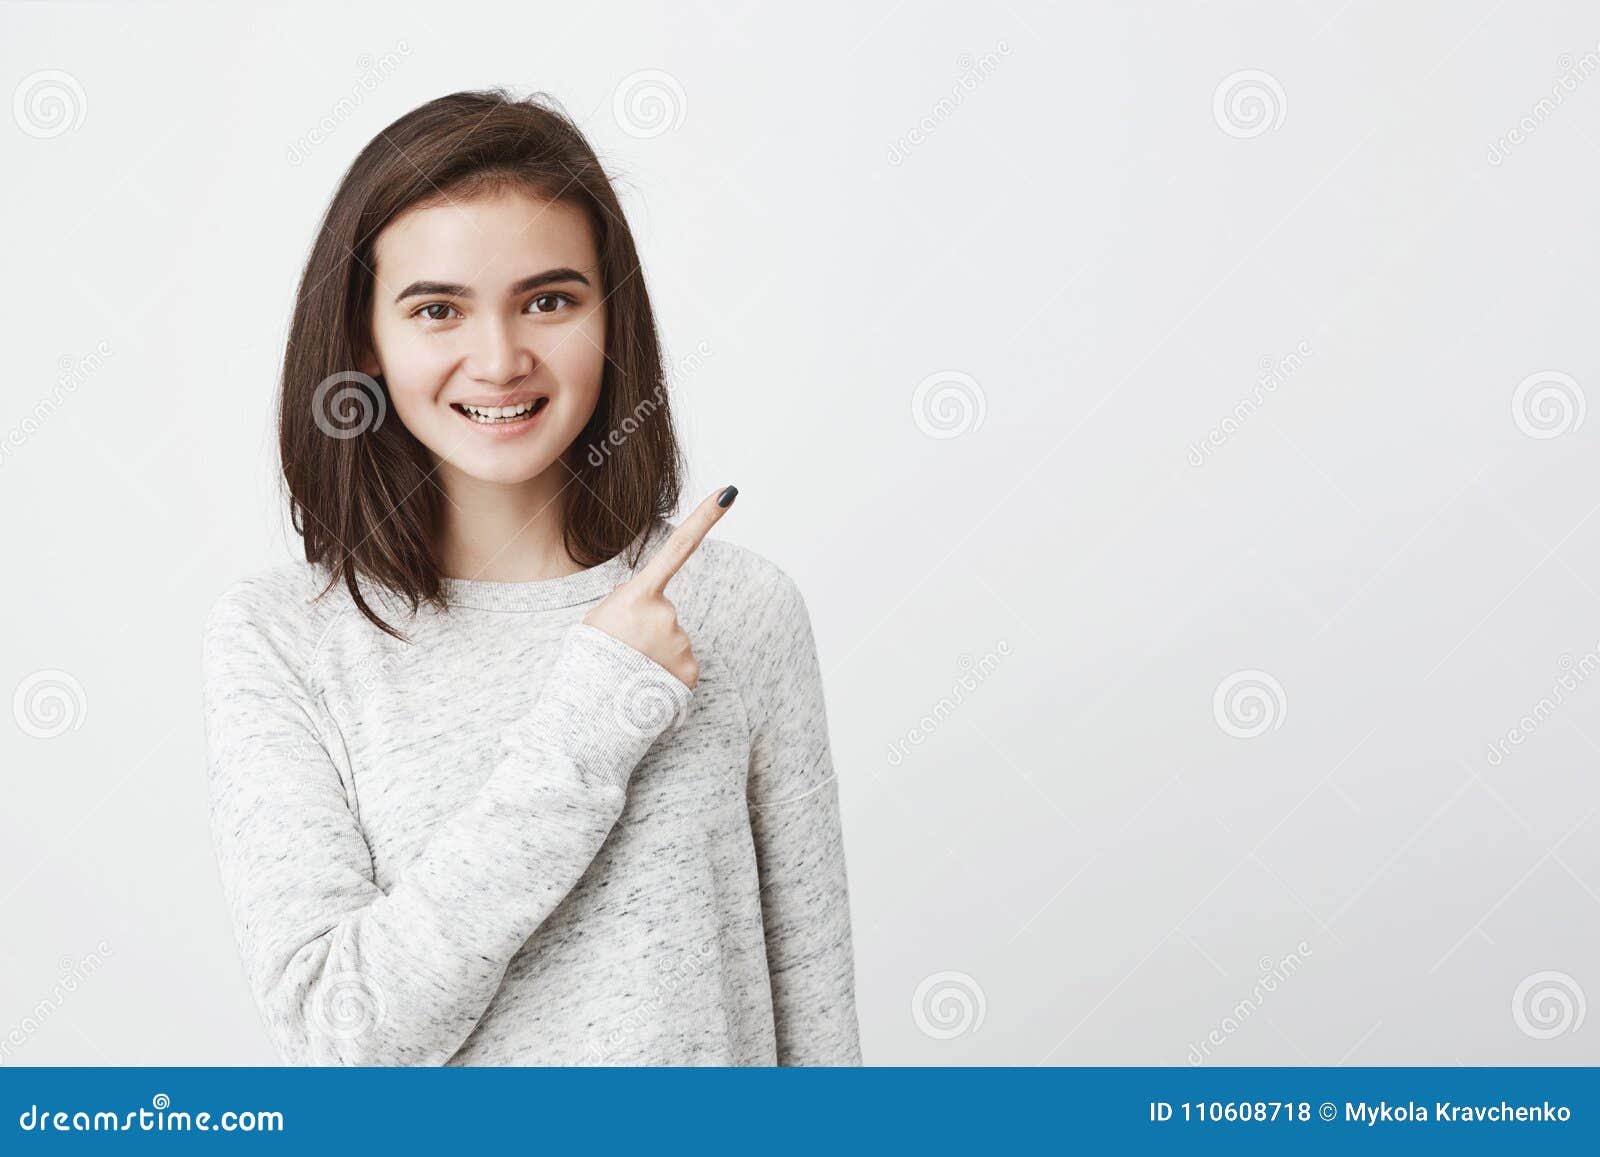 Menina adolescente com corte de cabelo curto branco e suéter branco